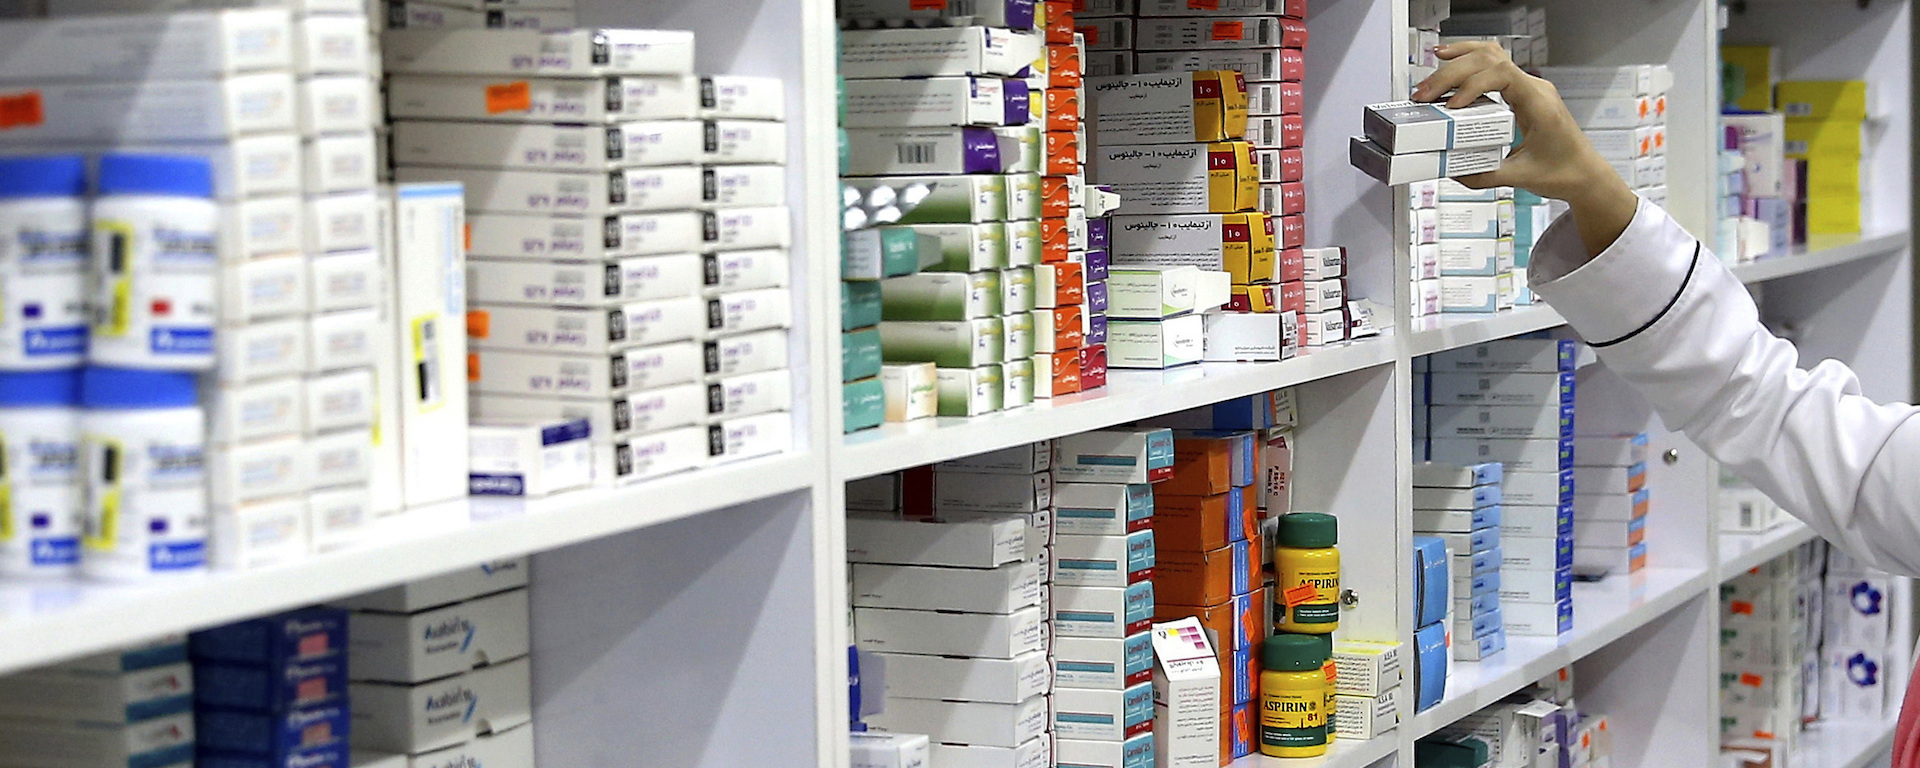 Минздрав России готов закупать отдельные виды лекарств при их дефиците